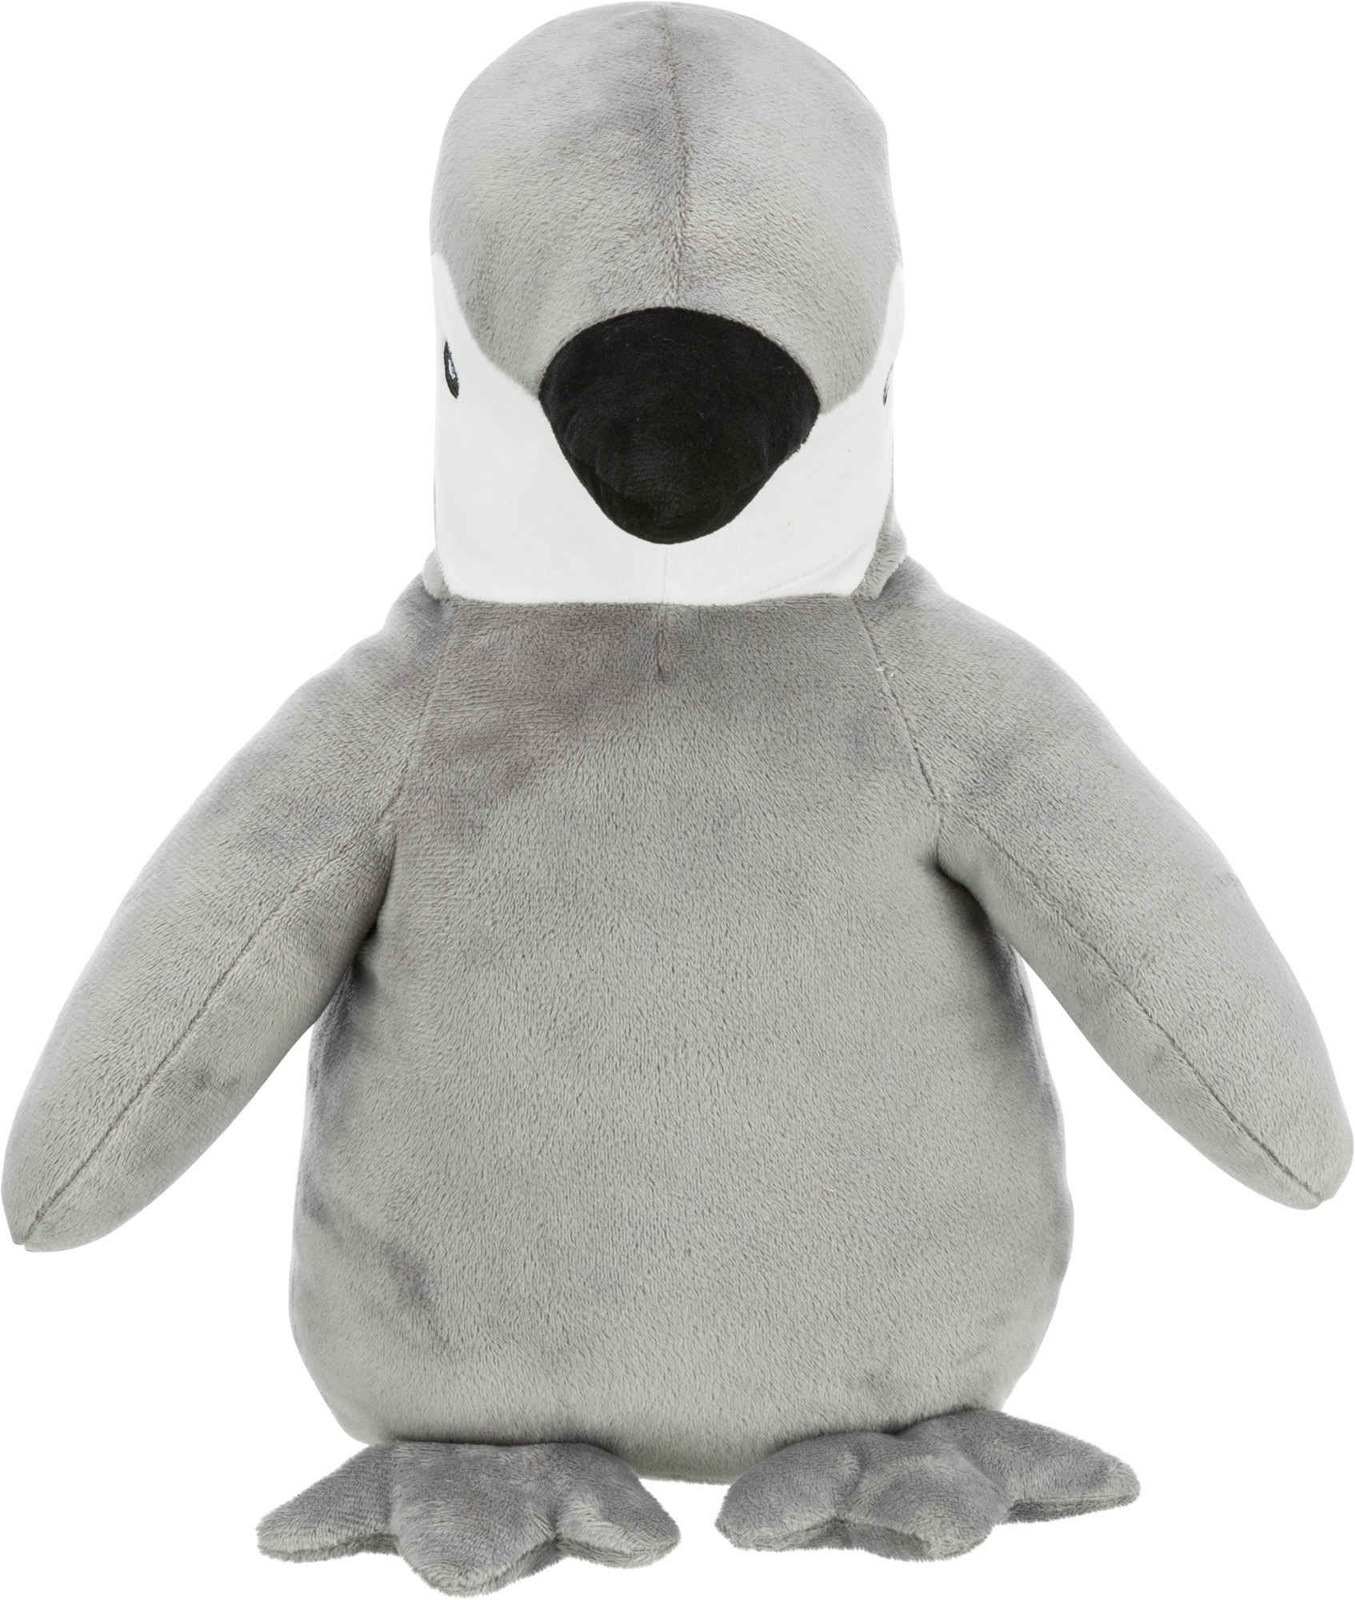 Trixie Trixie игрушка Пингвин,плюш, 38 см (284 г) цена и фото